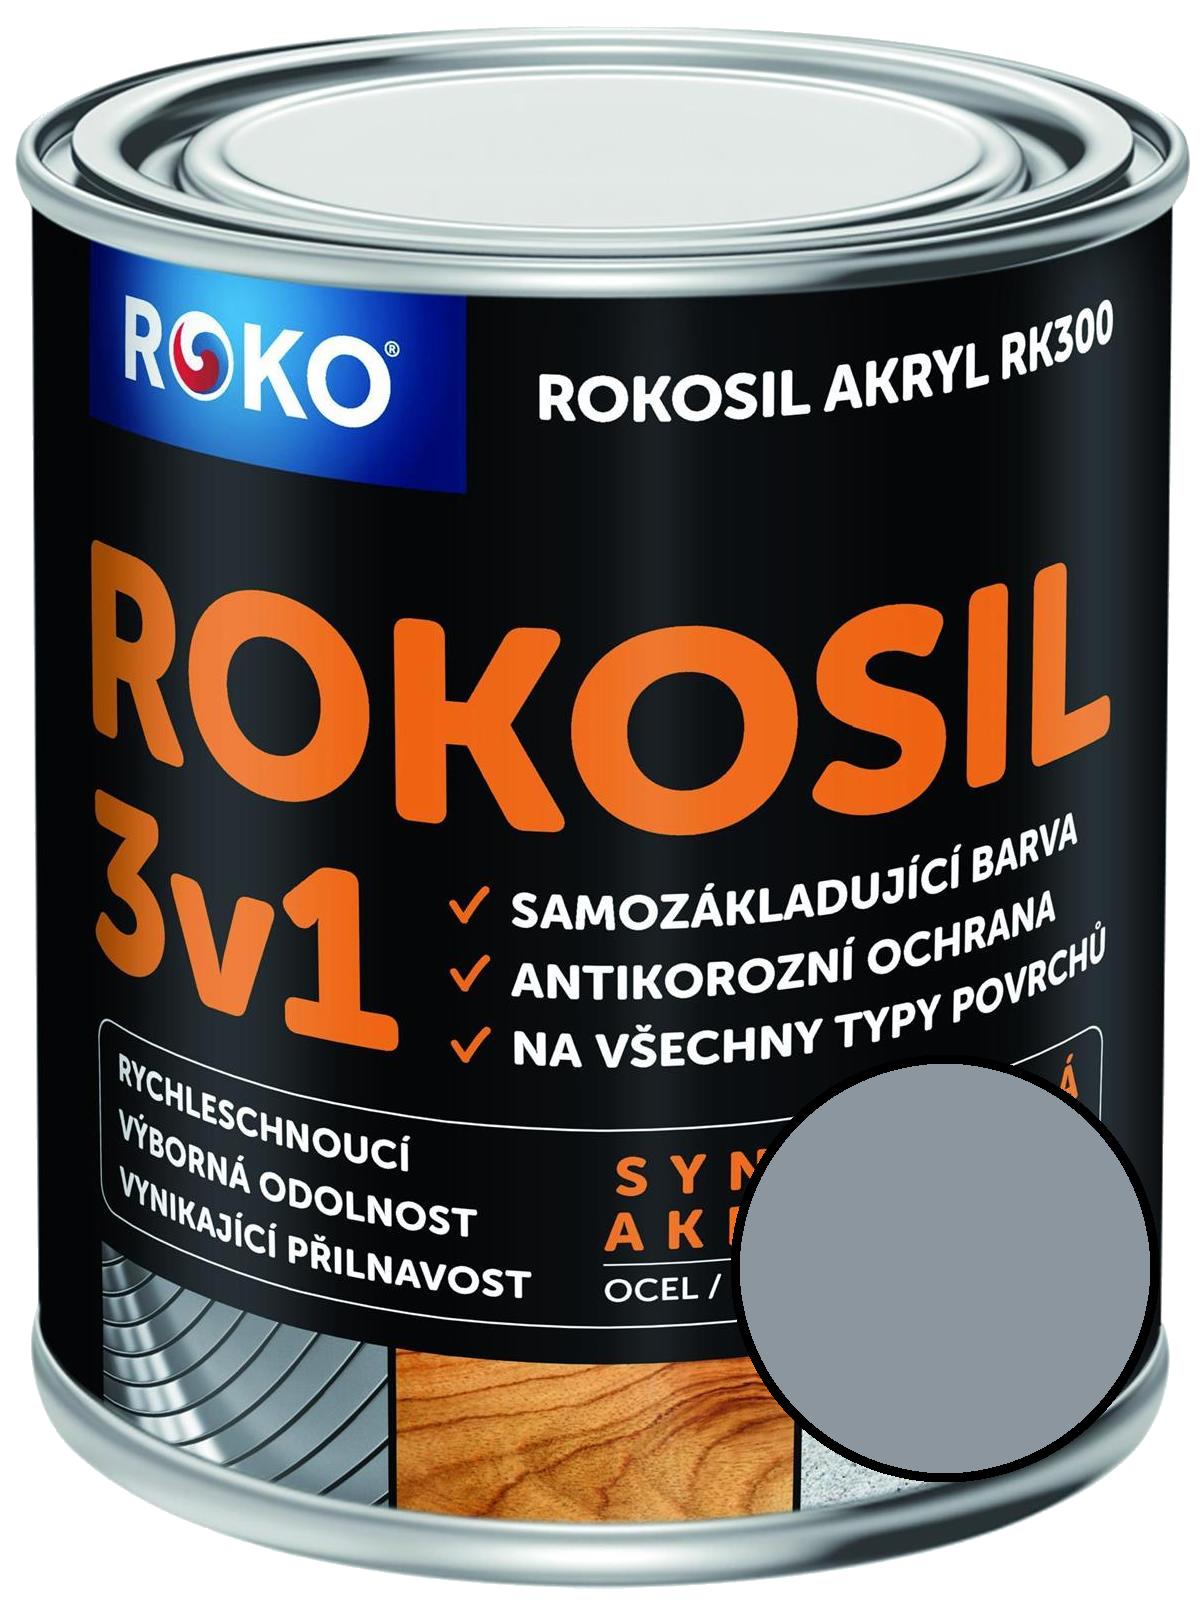 Barva samozákladující Rokosil akryl 3v1 RK 300 1010 šedá pastelová